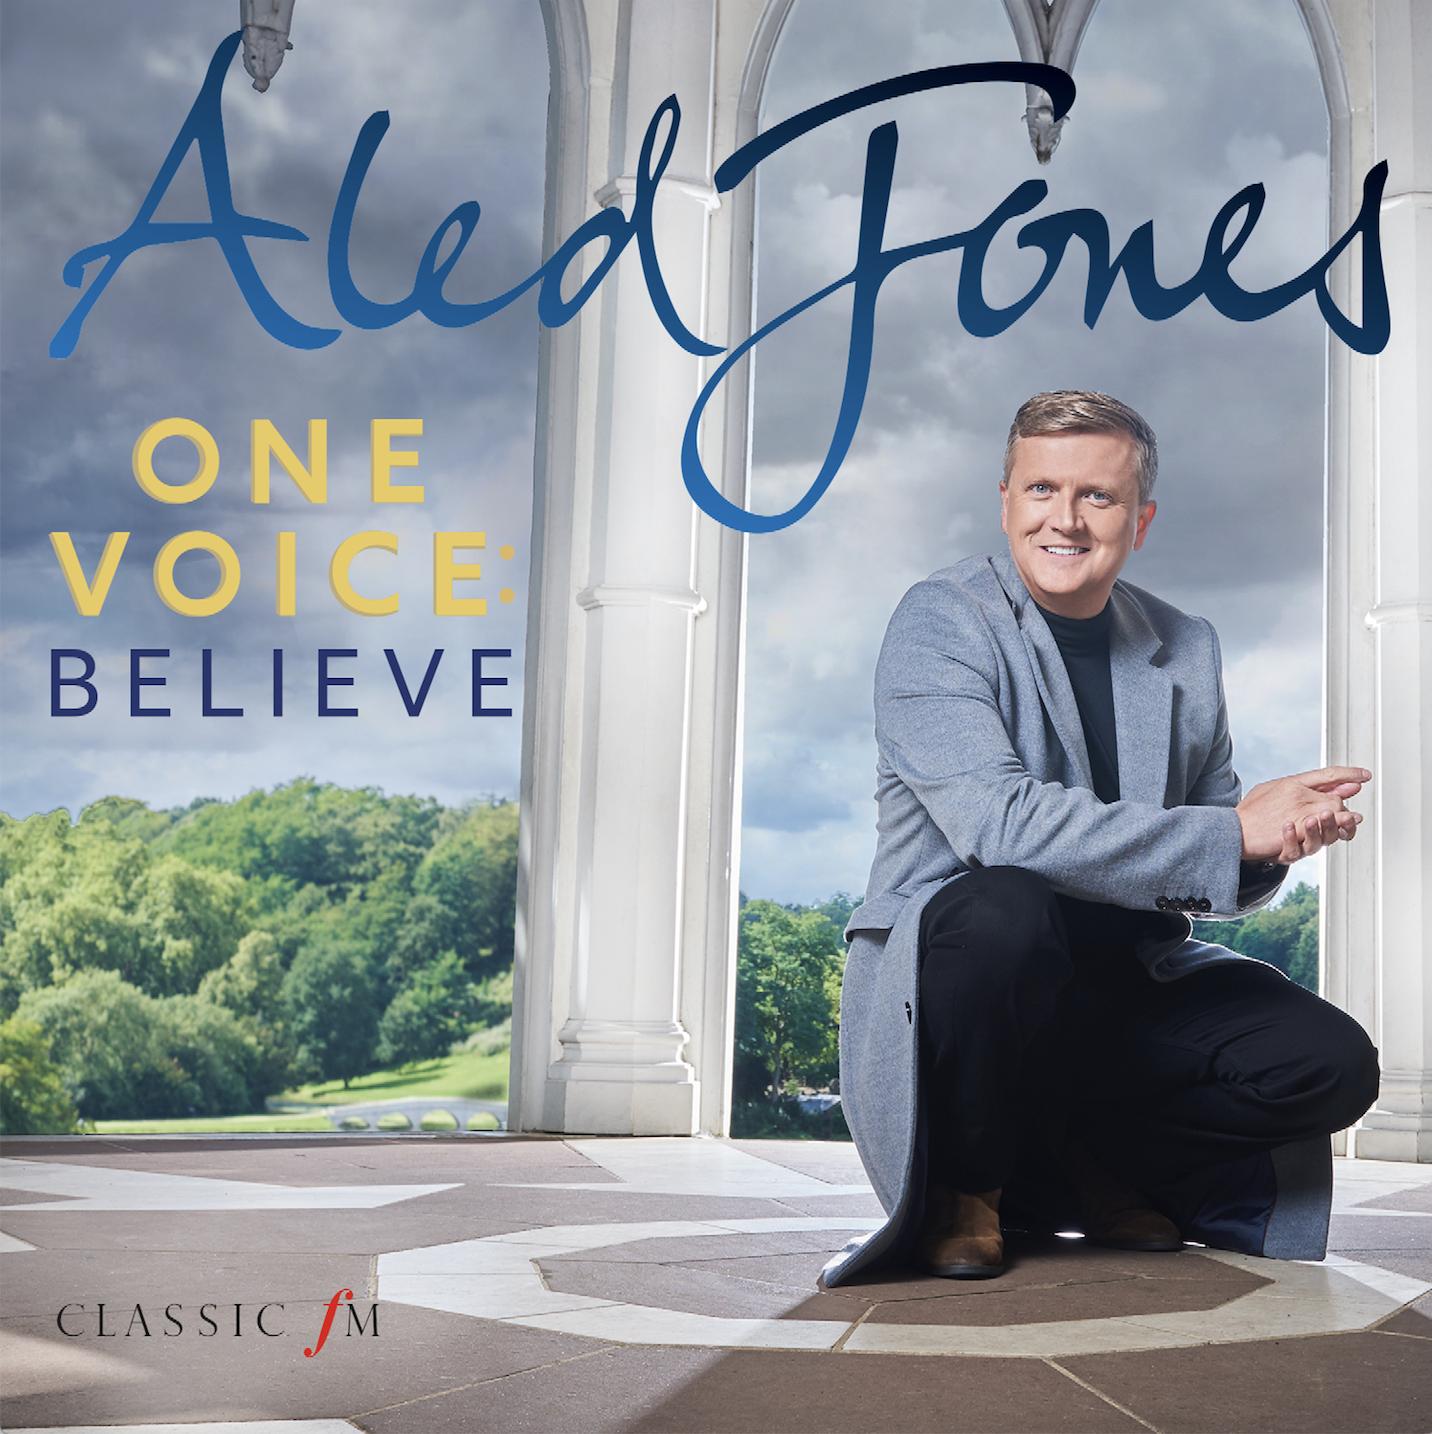 Aled Jones One Voice Believe